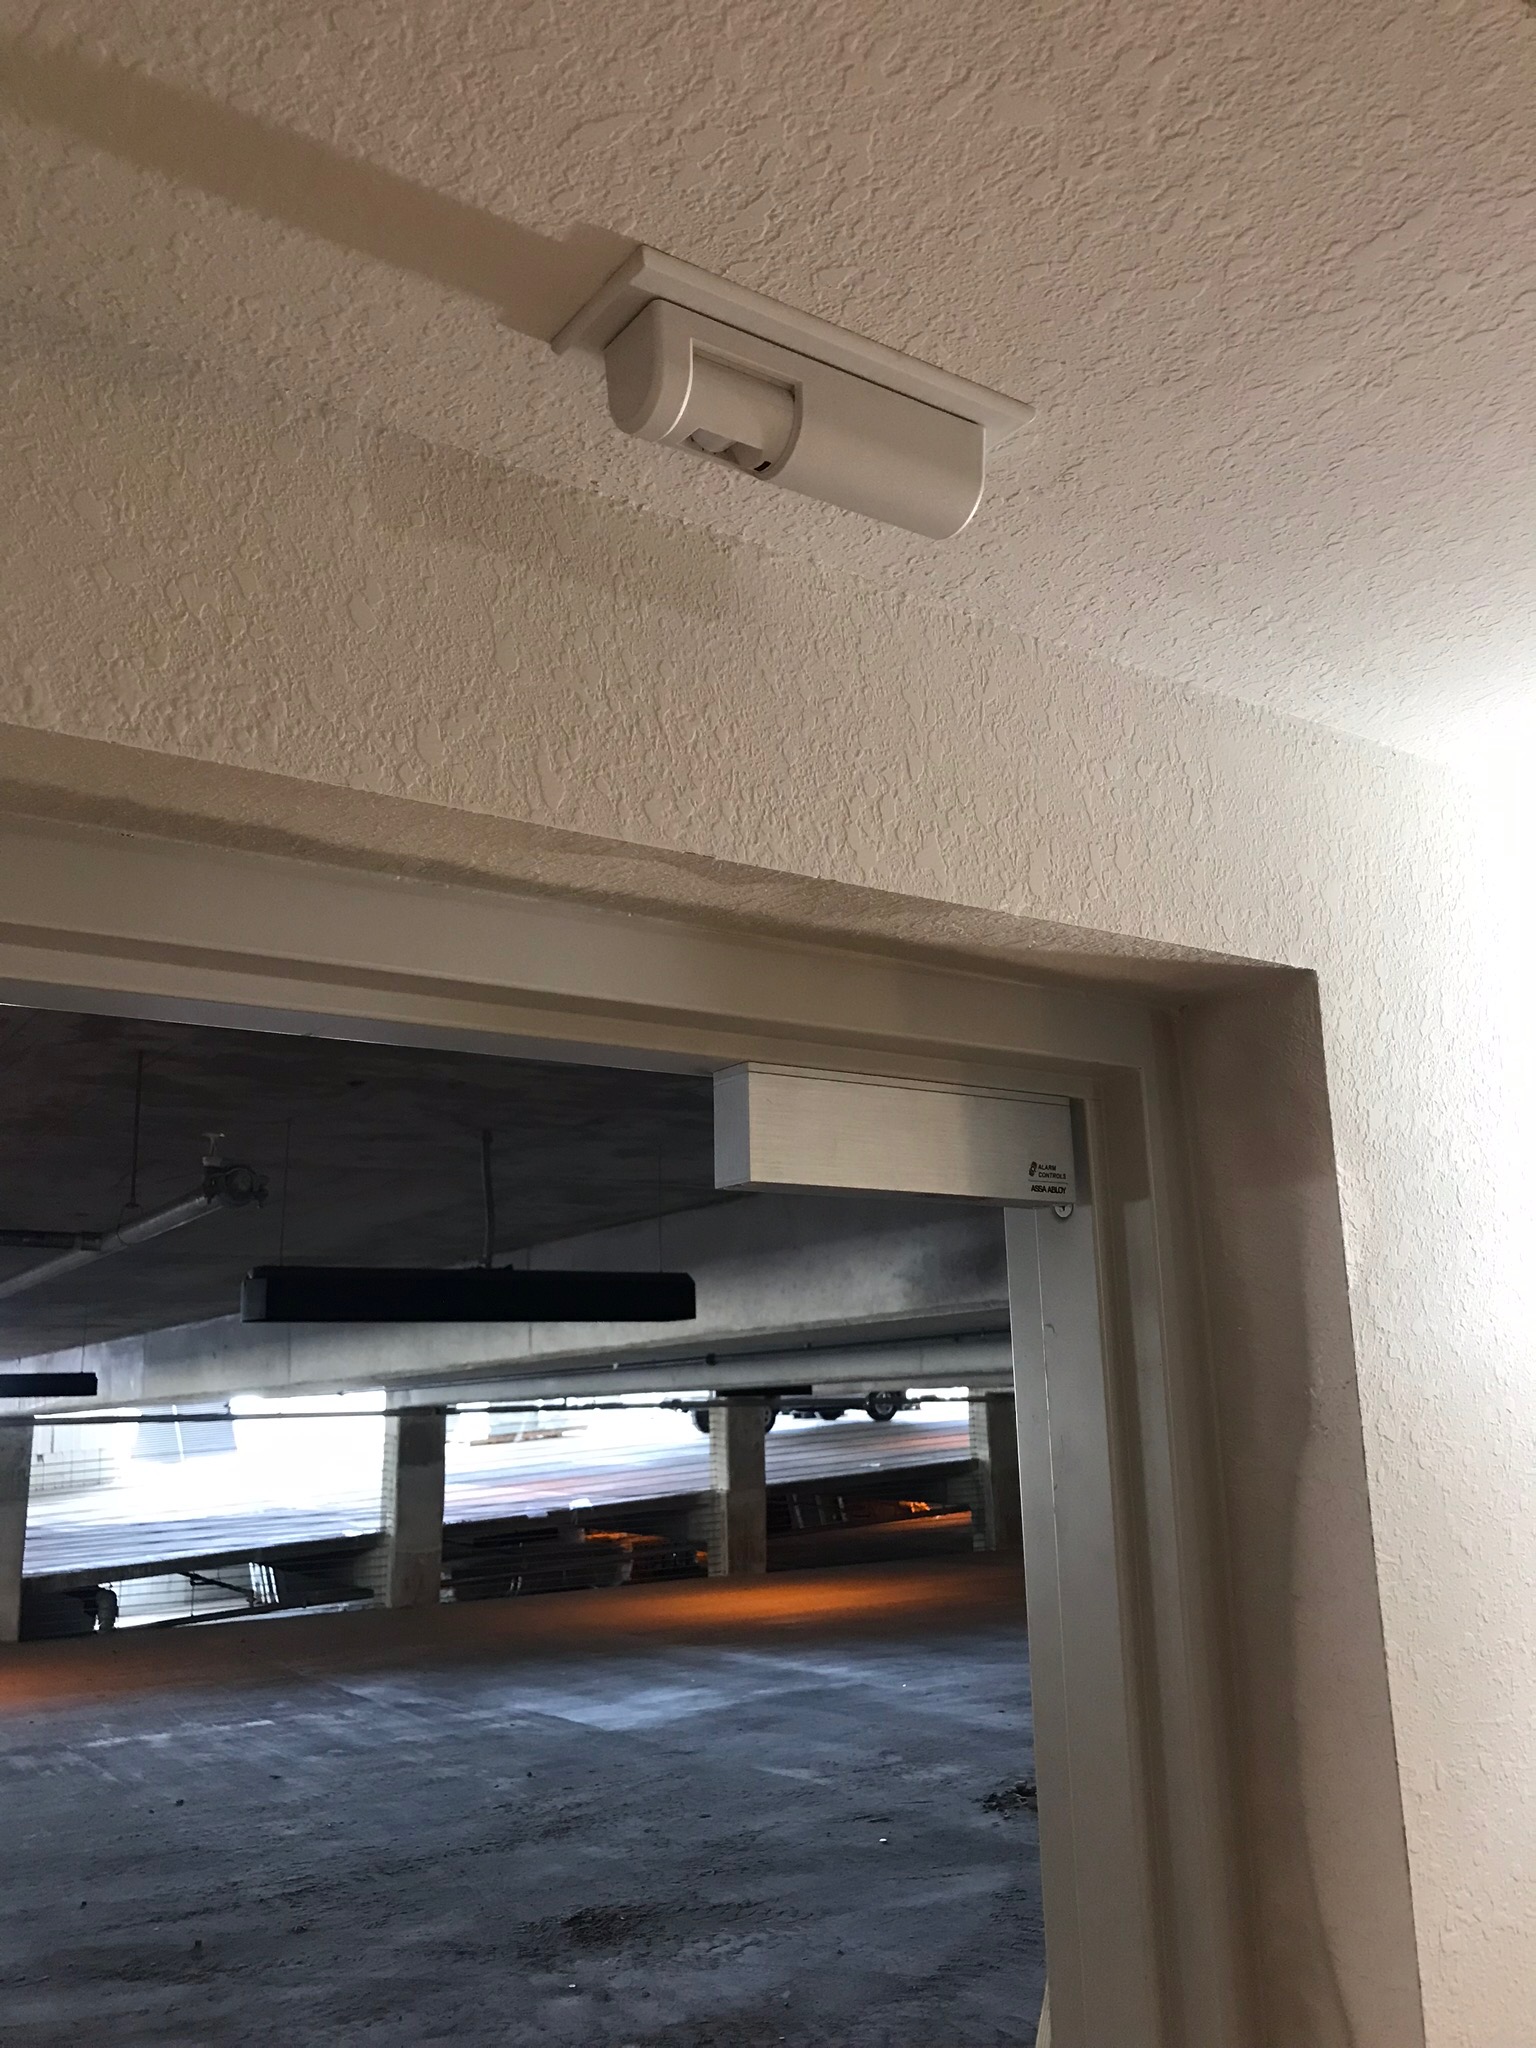 Single maglock installed on parking garage